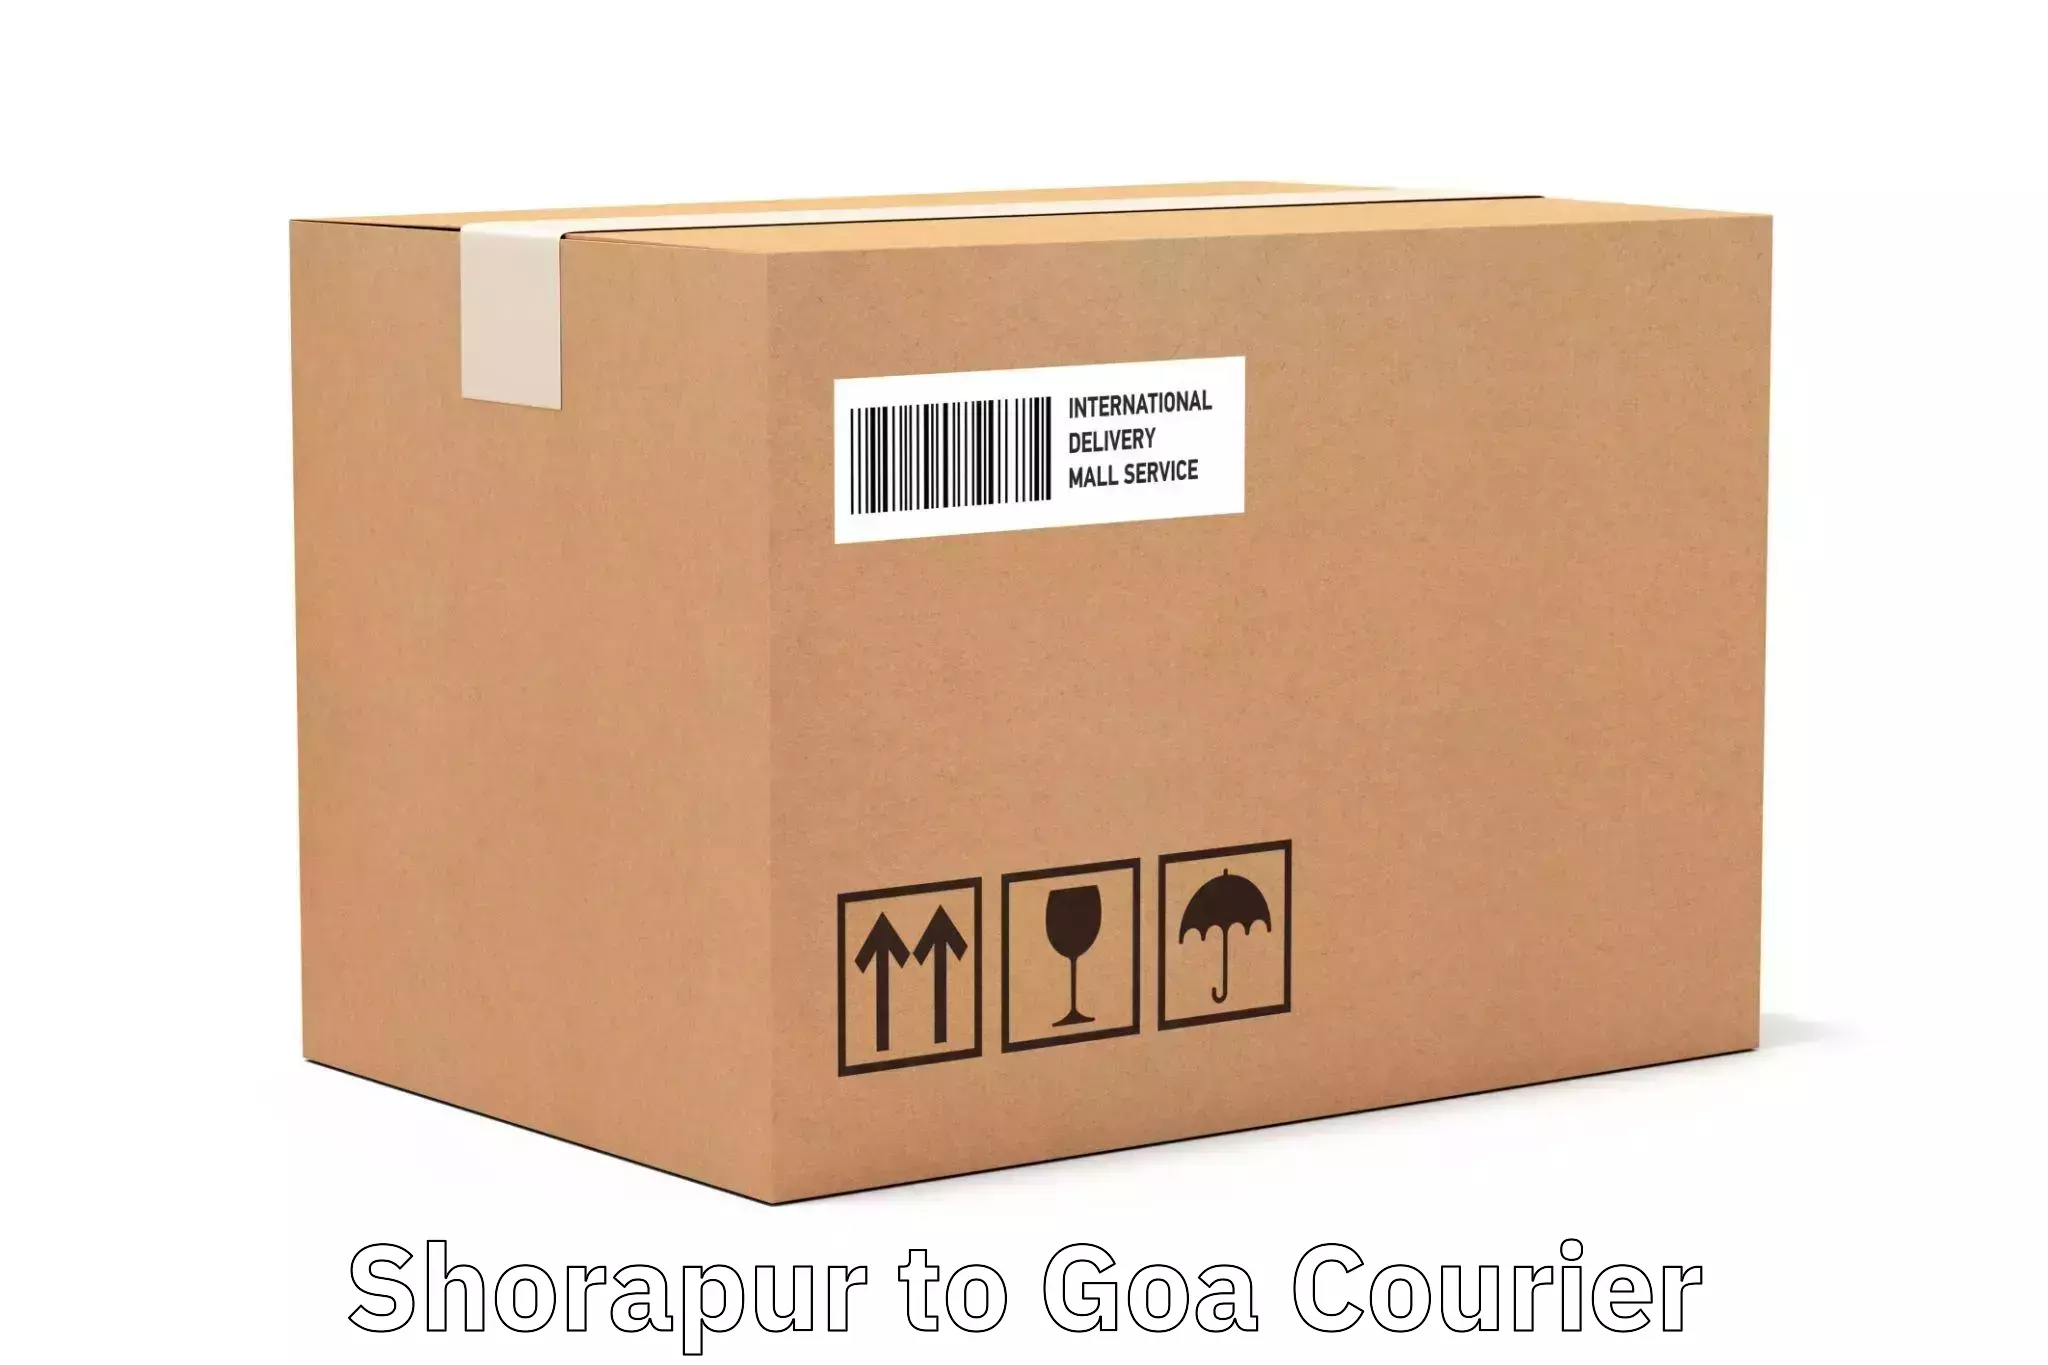 Optimized shipping routes Shorapur to Goa